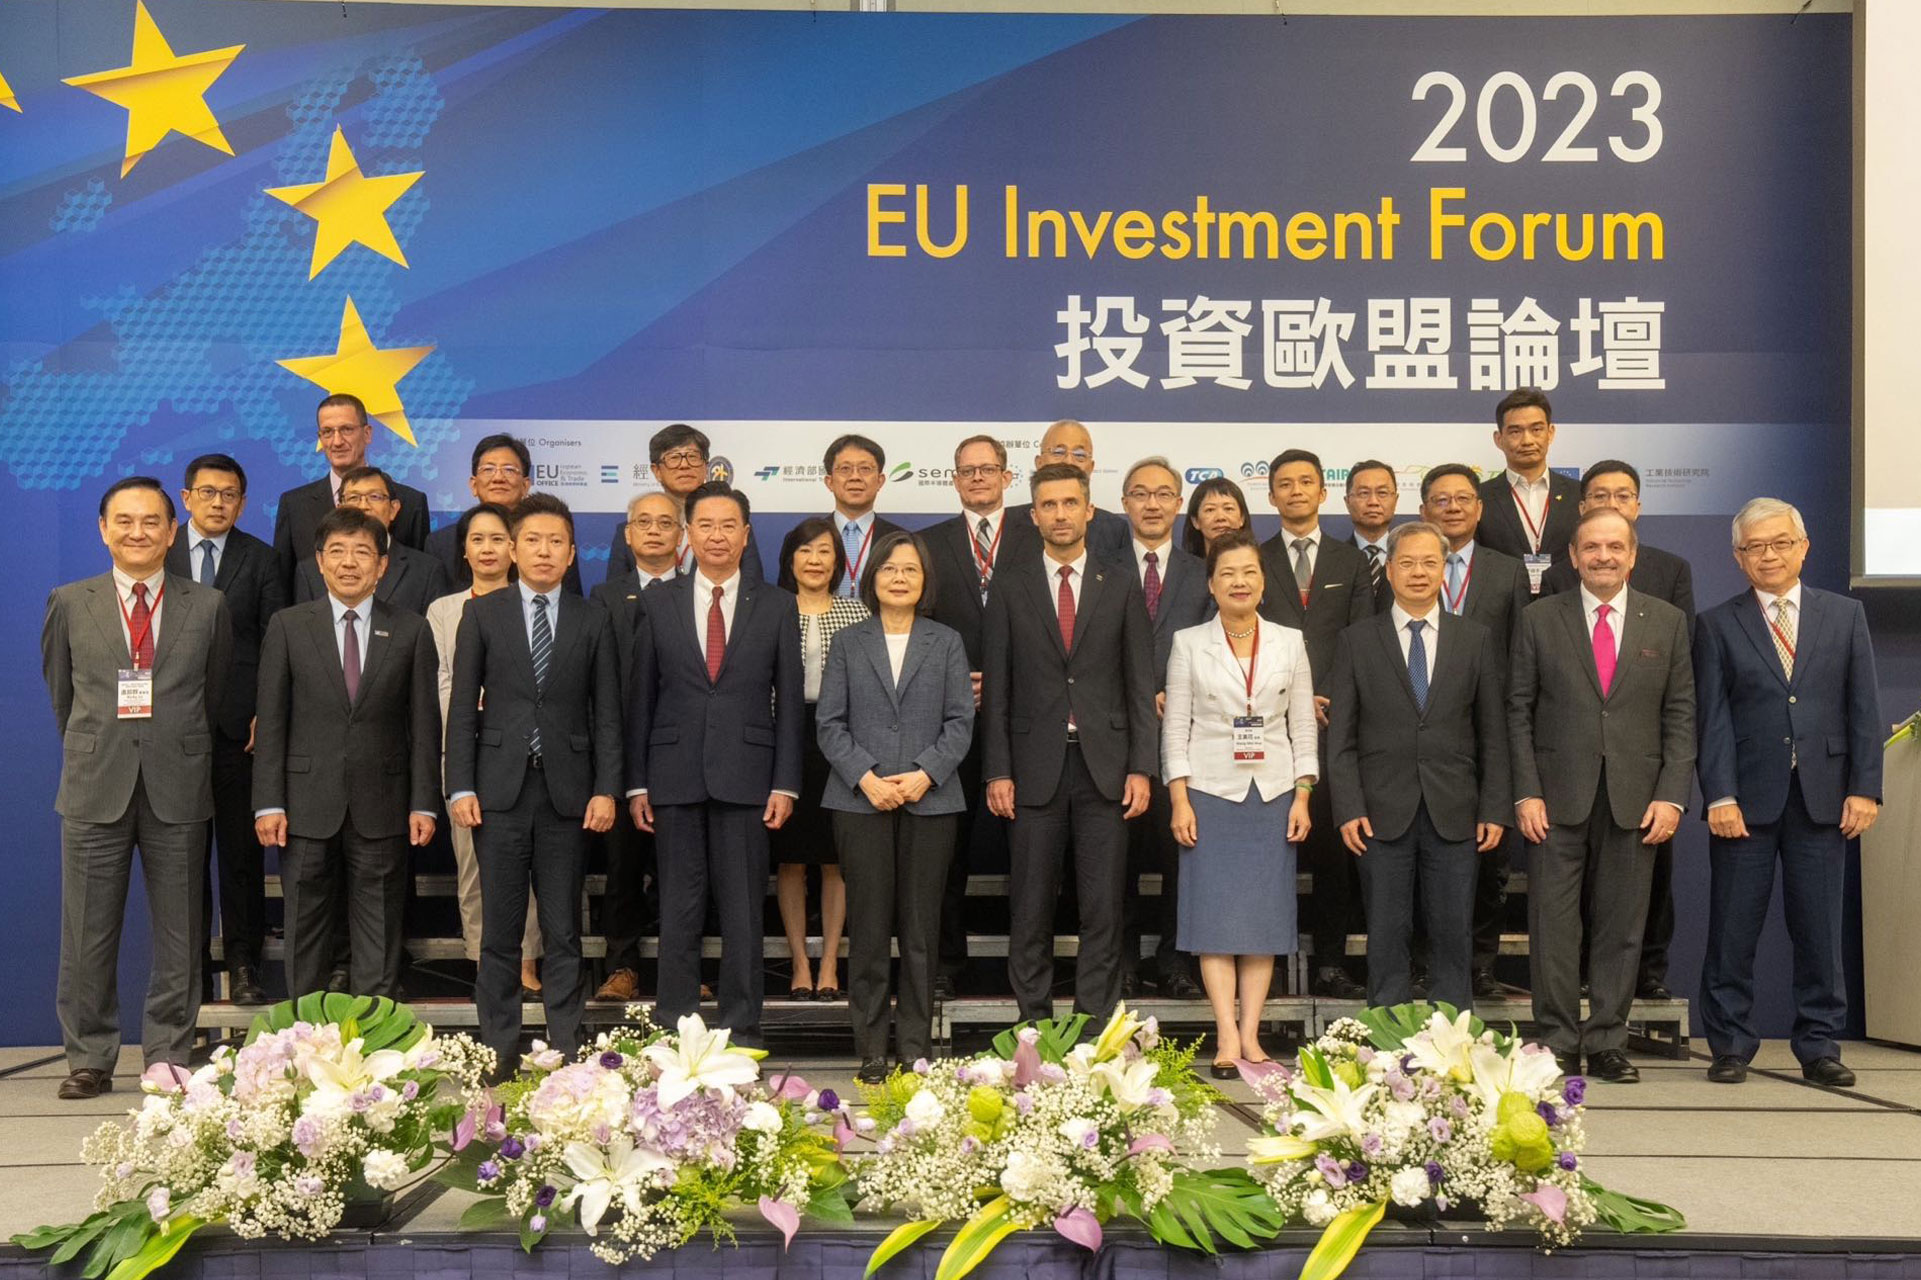 EU Investment Forum Photo-1